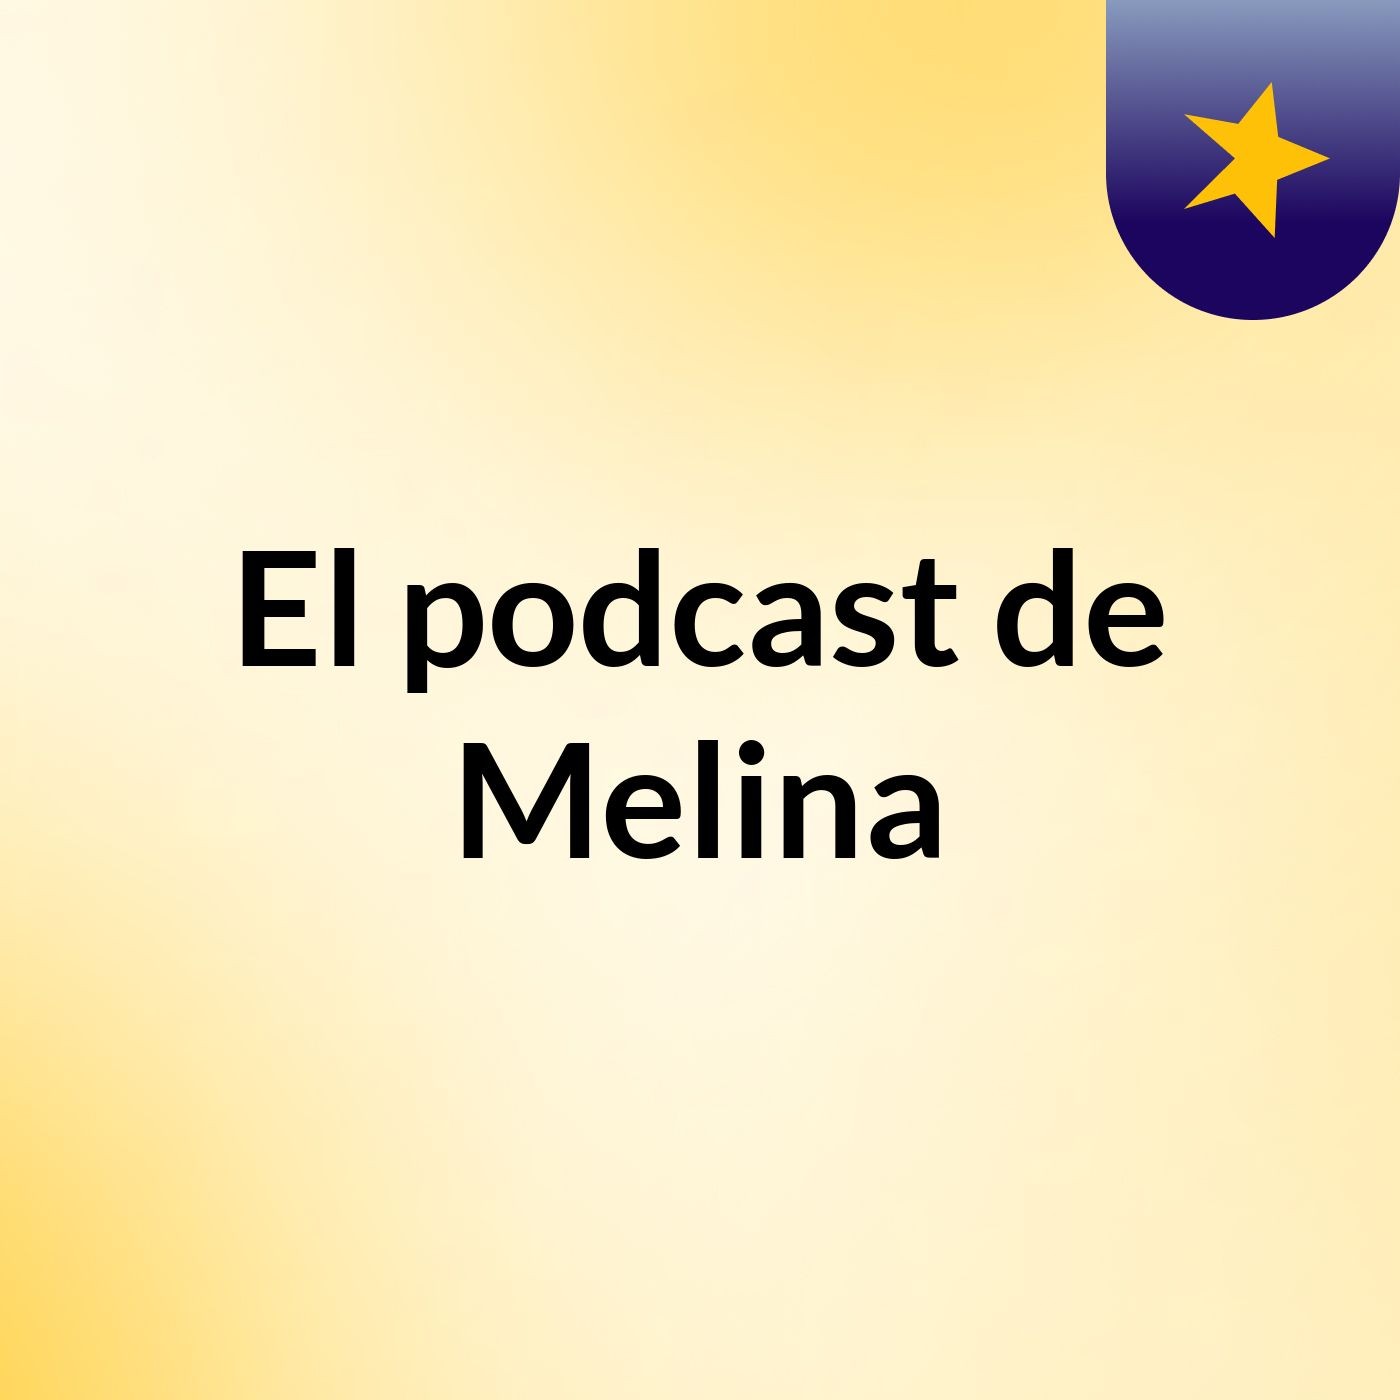 El podcast de Melina